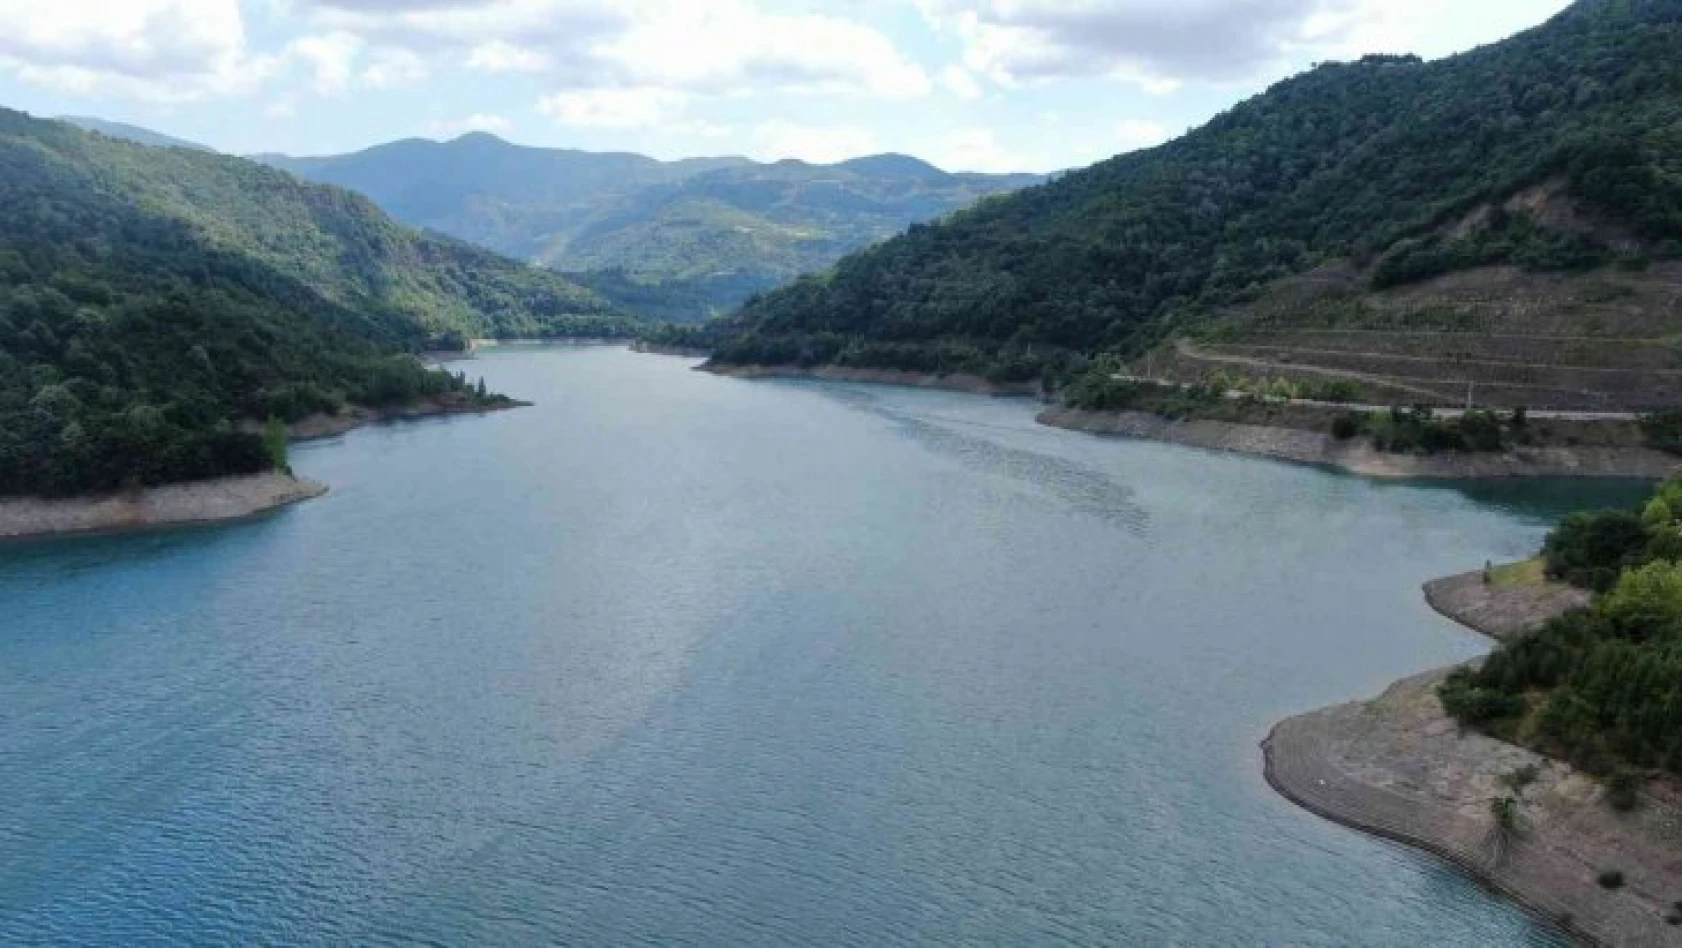 Kocaeli'nin içme suyunu karşılayan barajın çevresi çöp altında kaldı